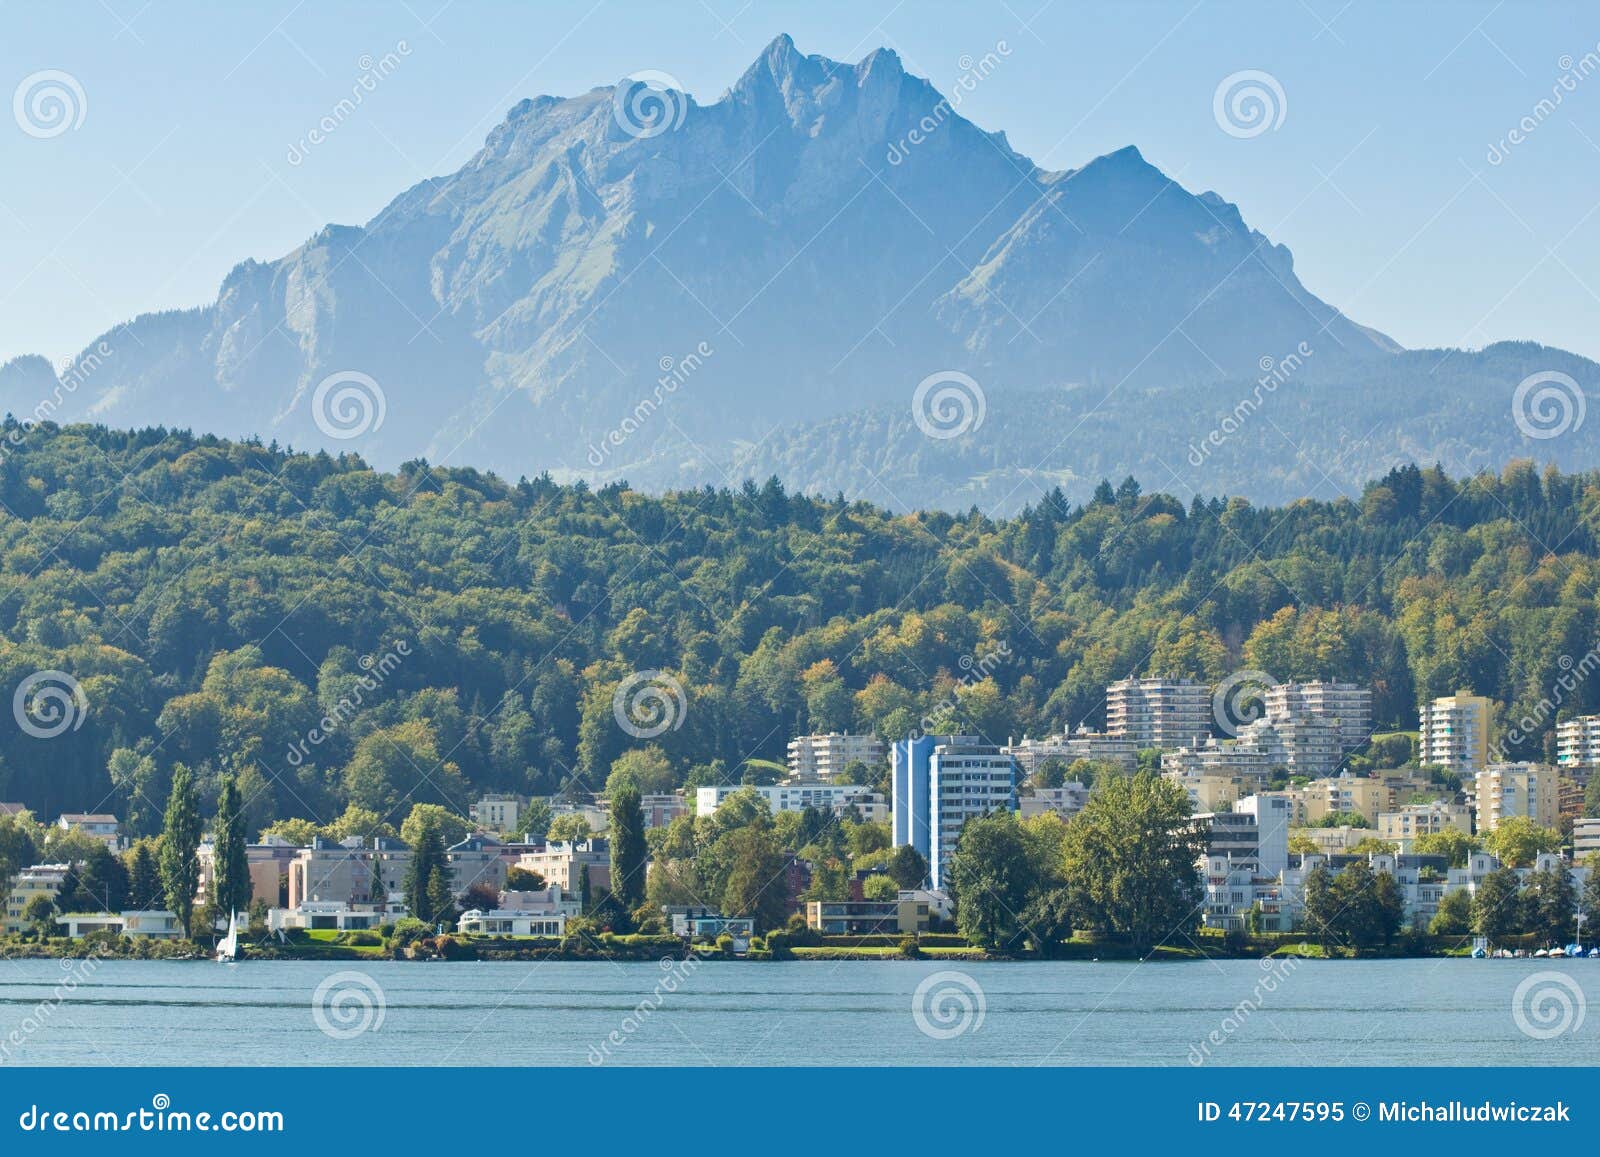 Mount Pilatus On Lake Lucerne In Switzerland Stock Image Image Of Horizontal Lucerne 47247595